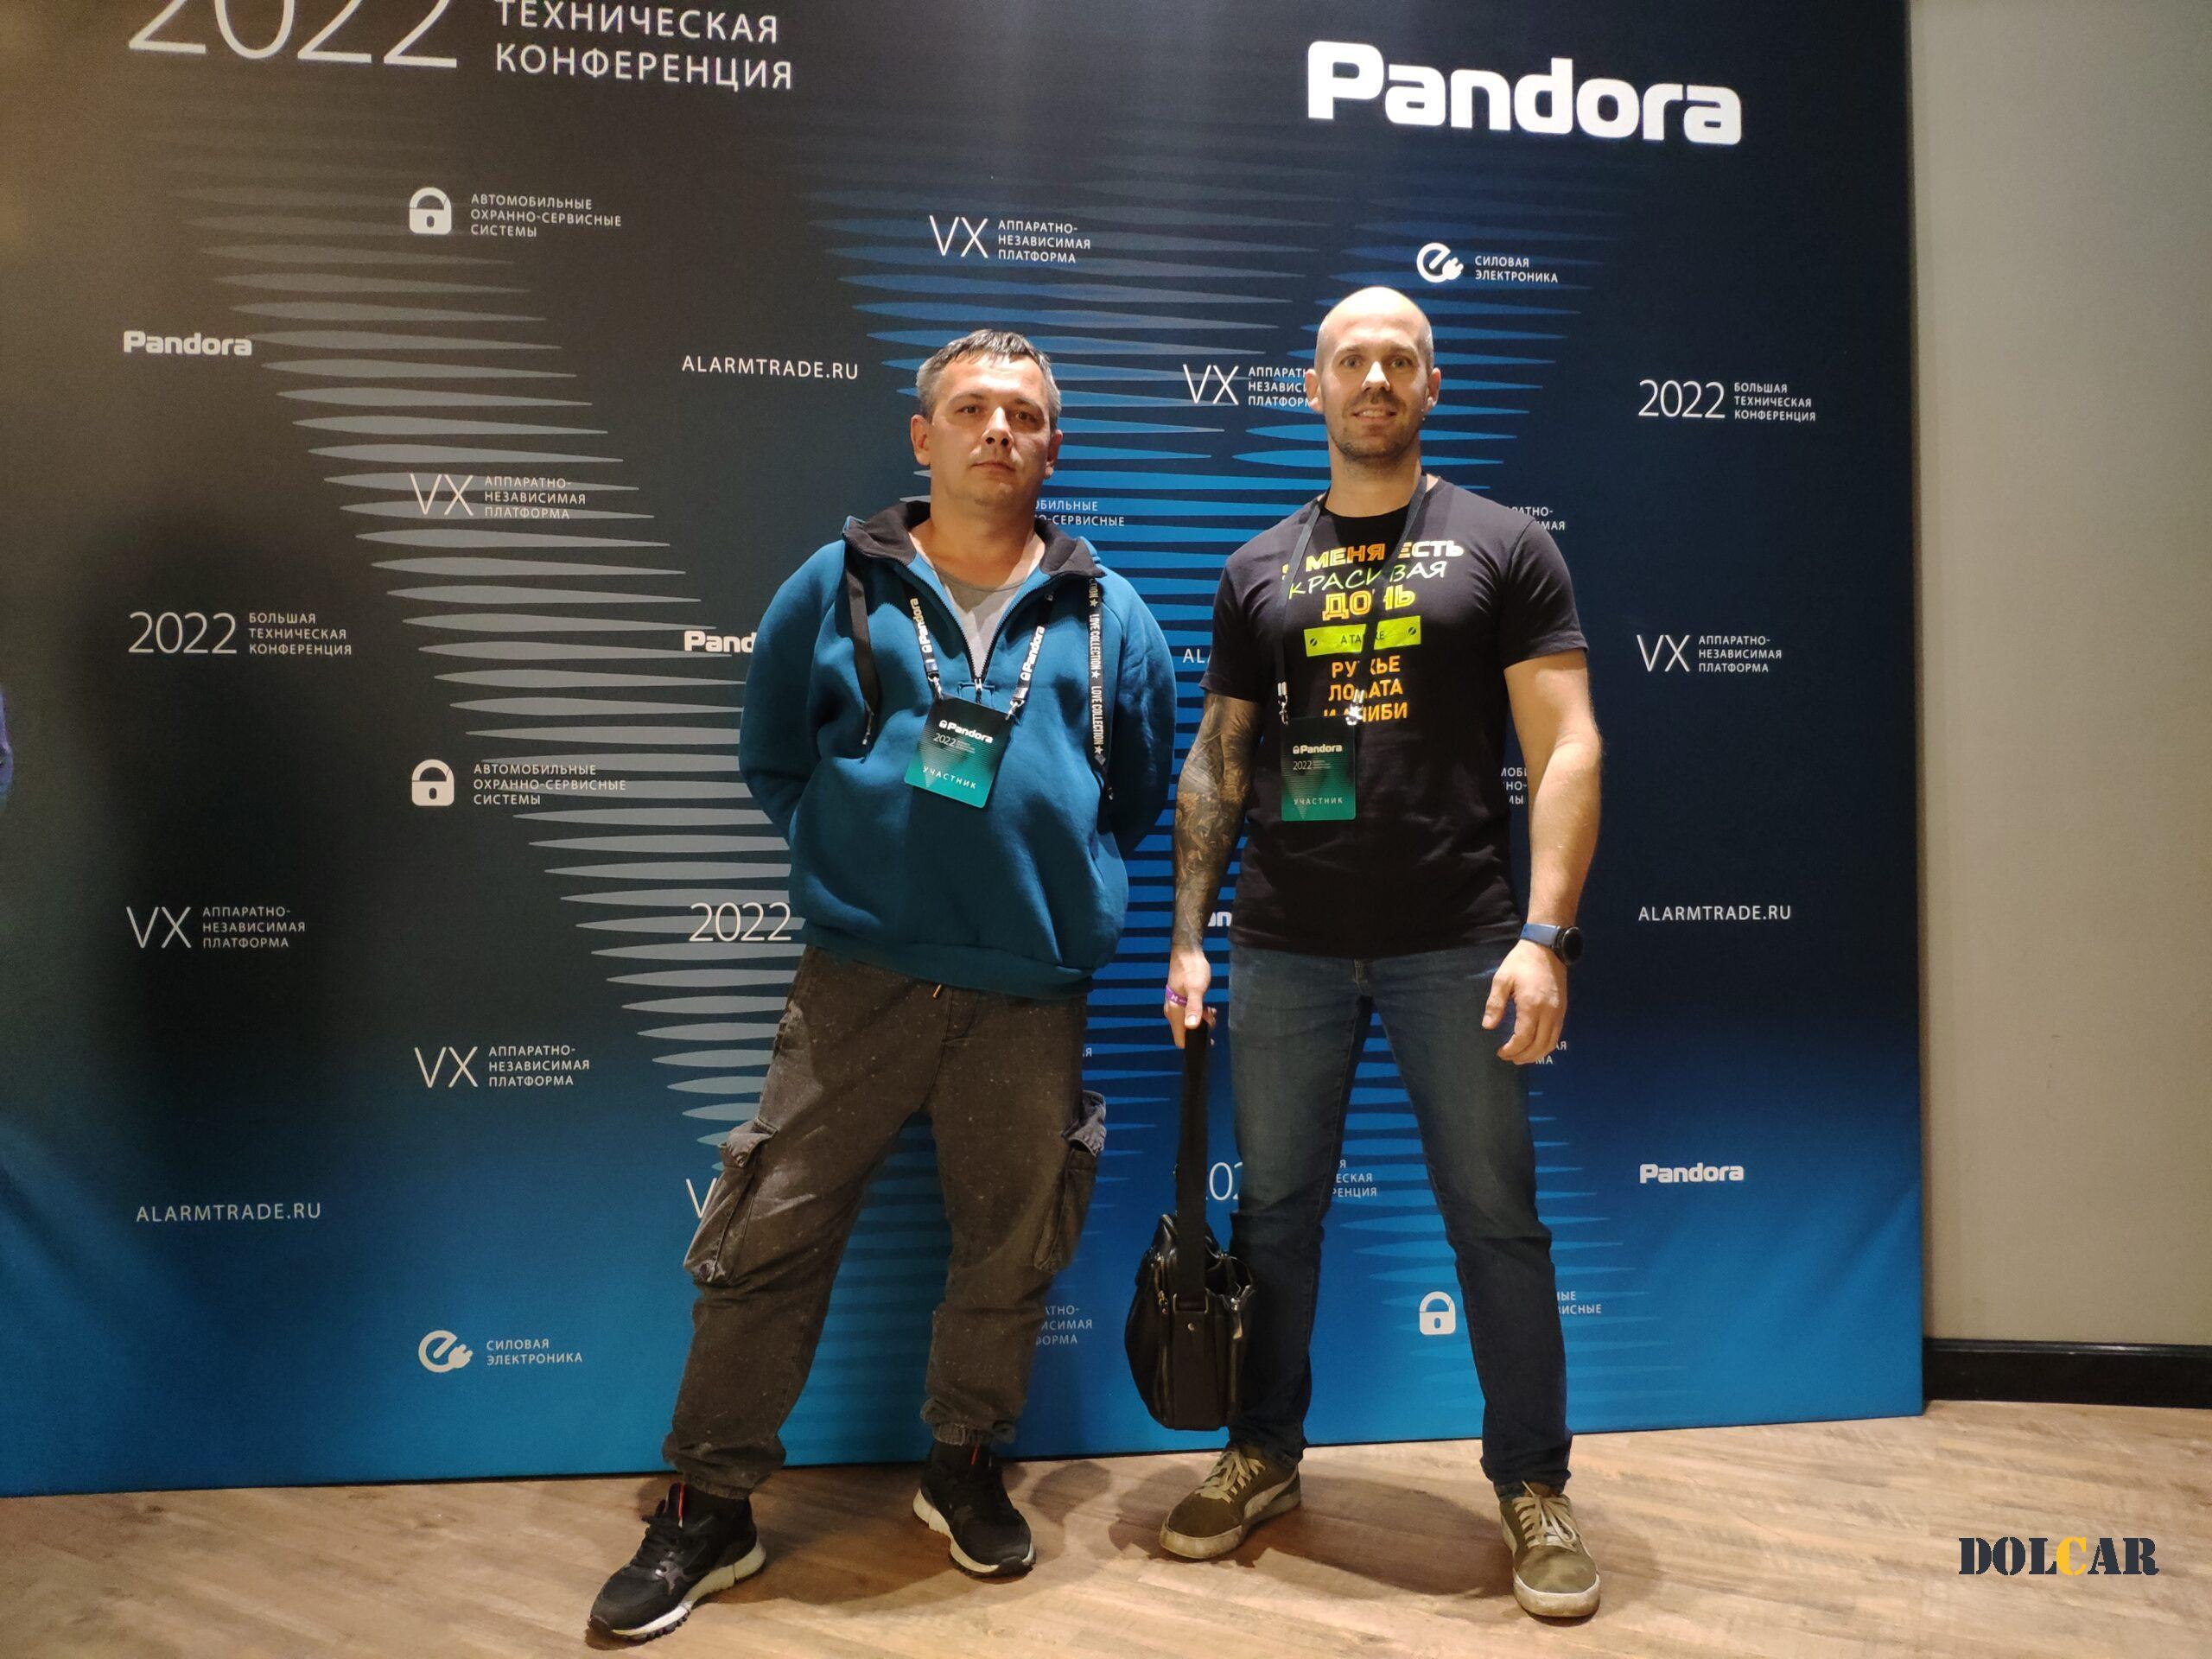 встреча Pandora 2022